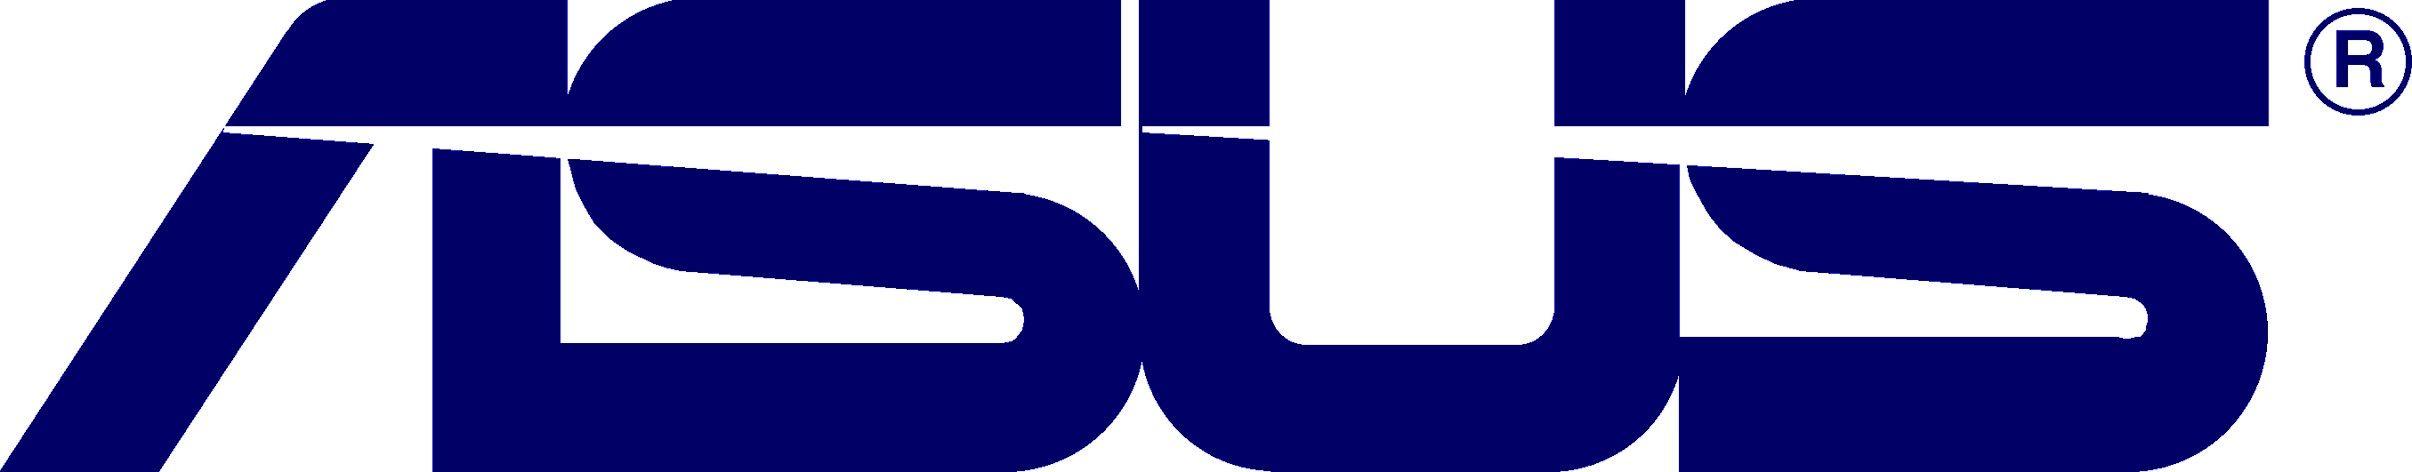 Asus OEM Logo - Asus oem logo download